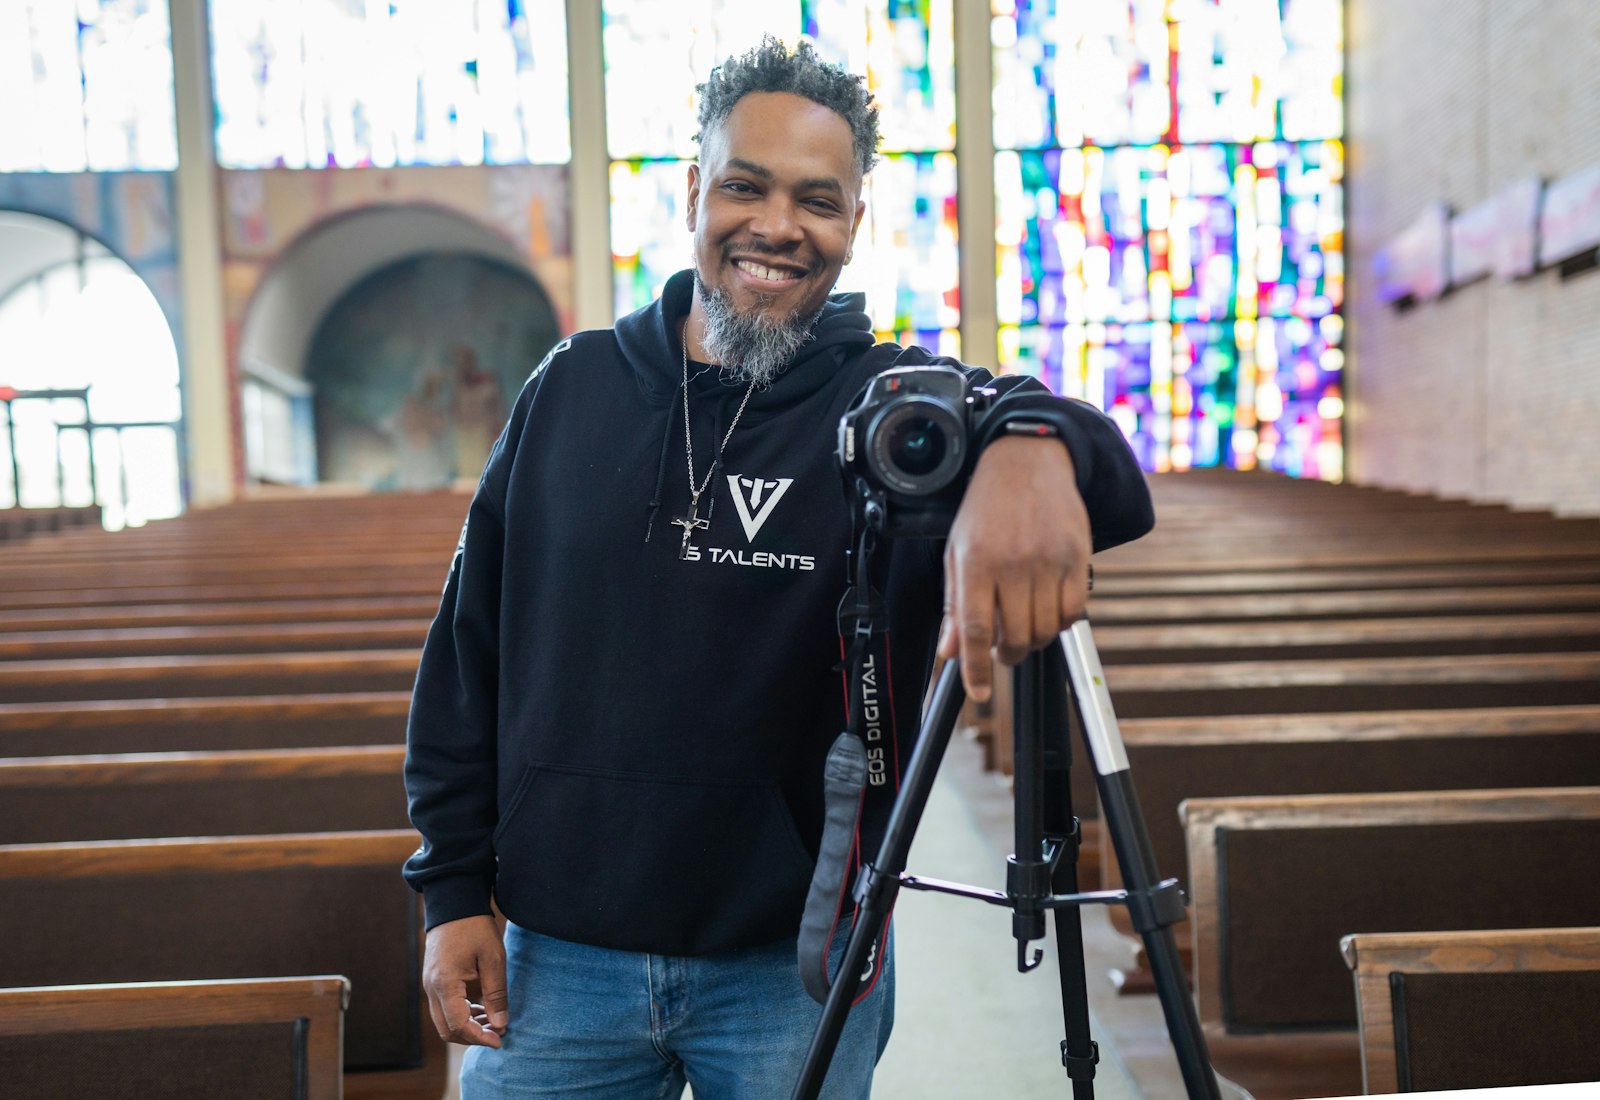 Como católico de color, Smith dijo que a menudo publica videos sobre su fe y responde preguntas de seguidores curiosos sobre su religión. Actualmente está produciendo una serie de videos sobre santos católicos de color.